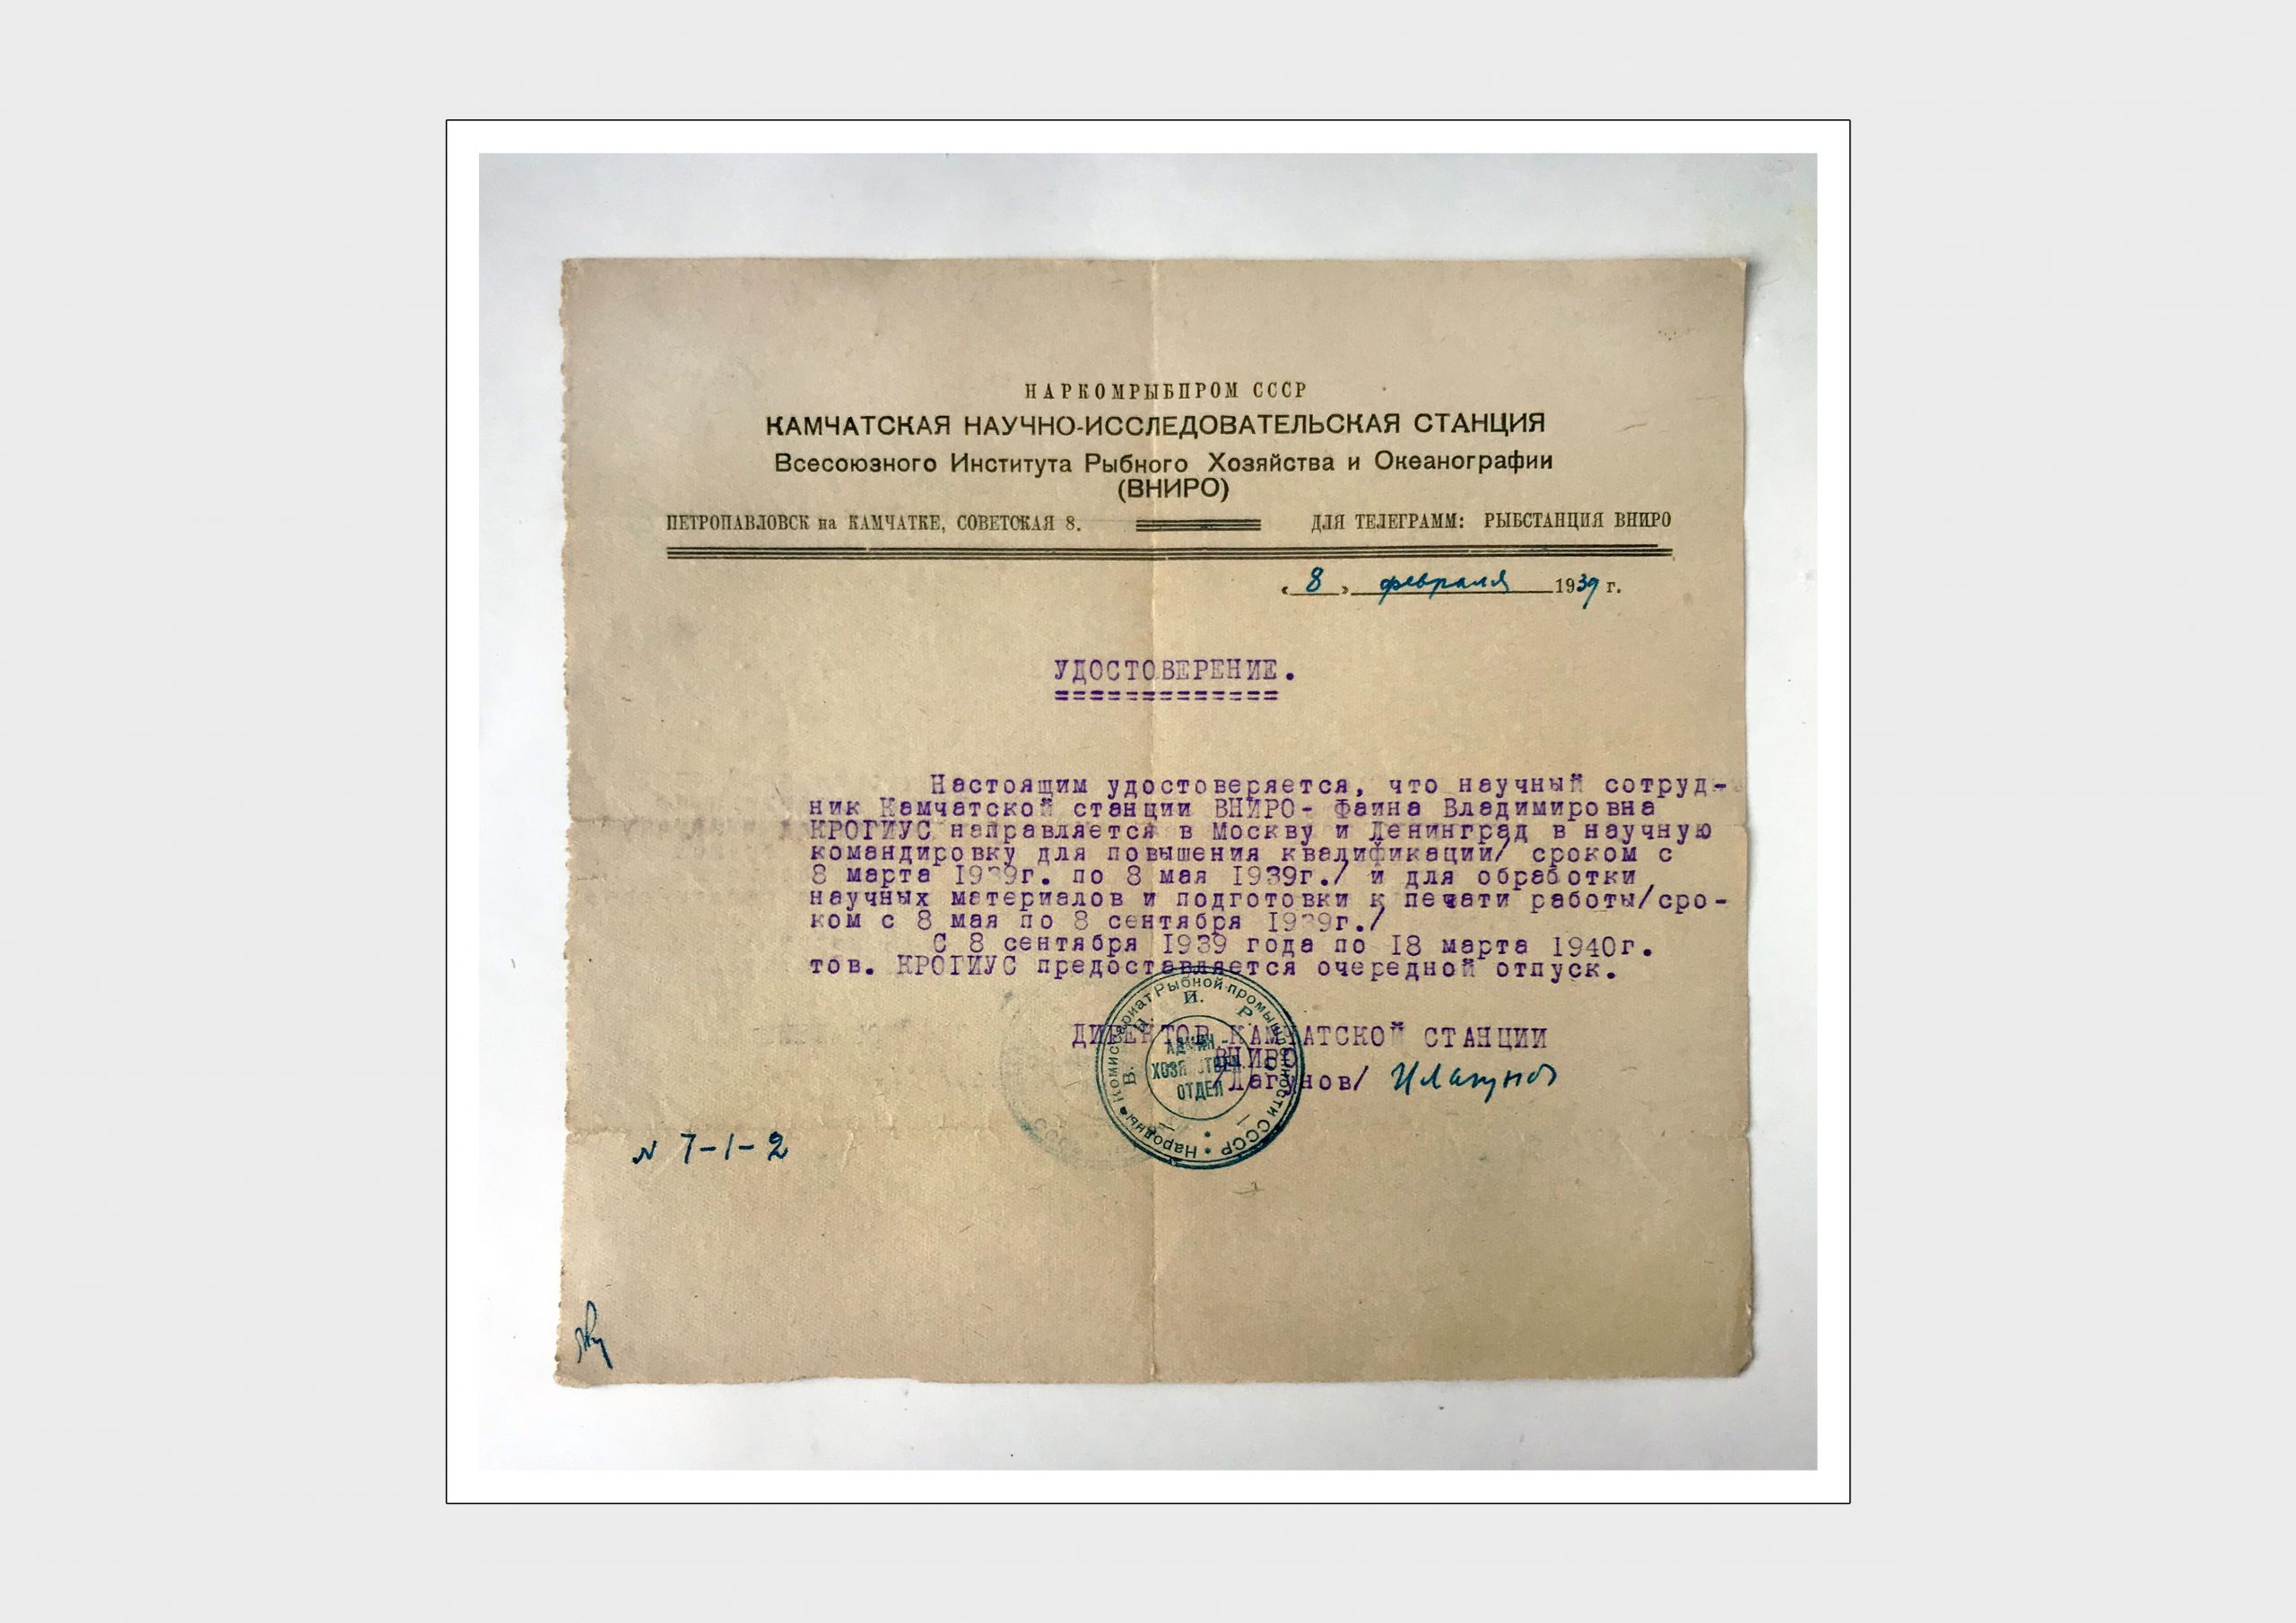 Удостоверение ВНИРО Крогиус Ф.В.
Бумага, машинопись
1939 г.